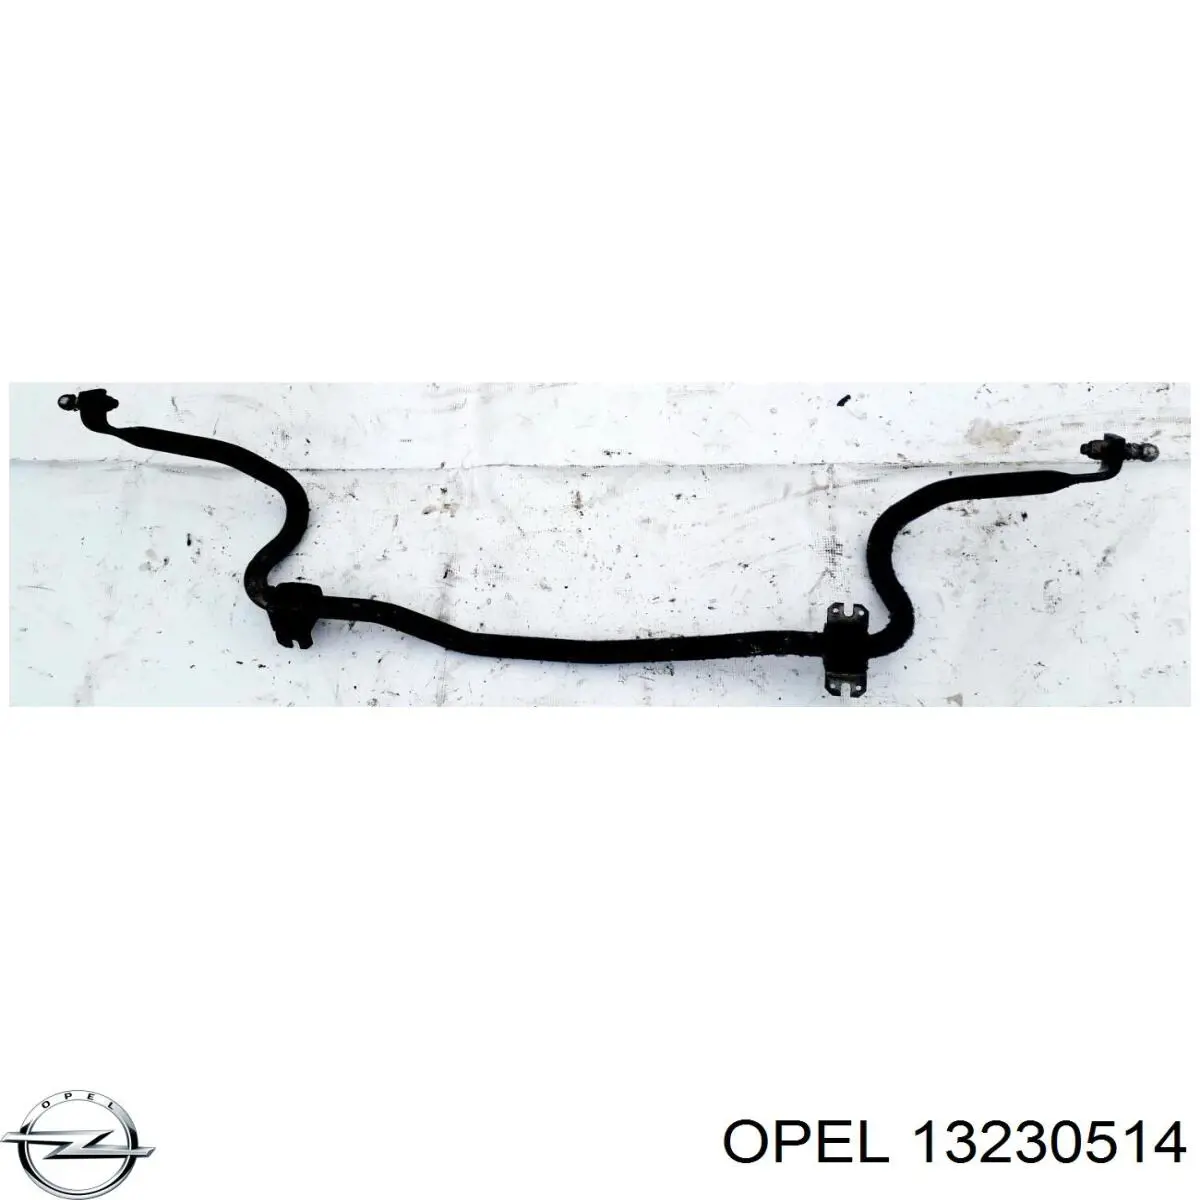 350183 Opel стабилизатор передний